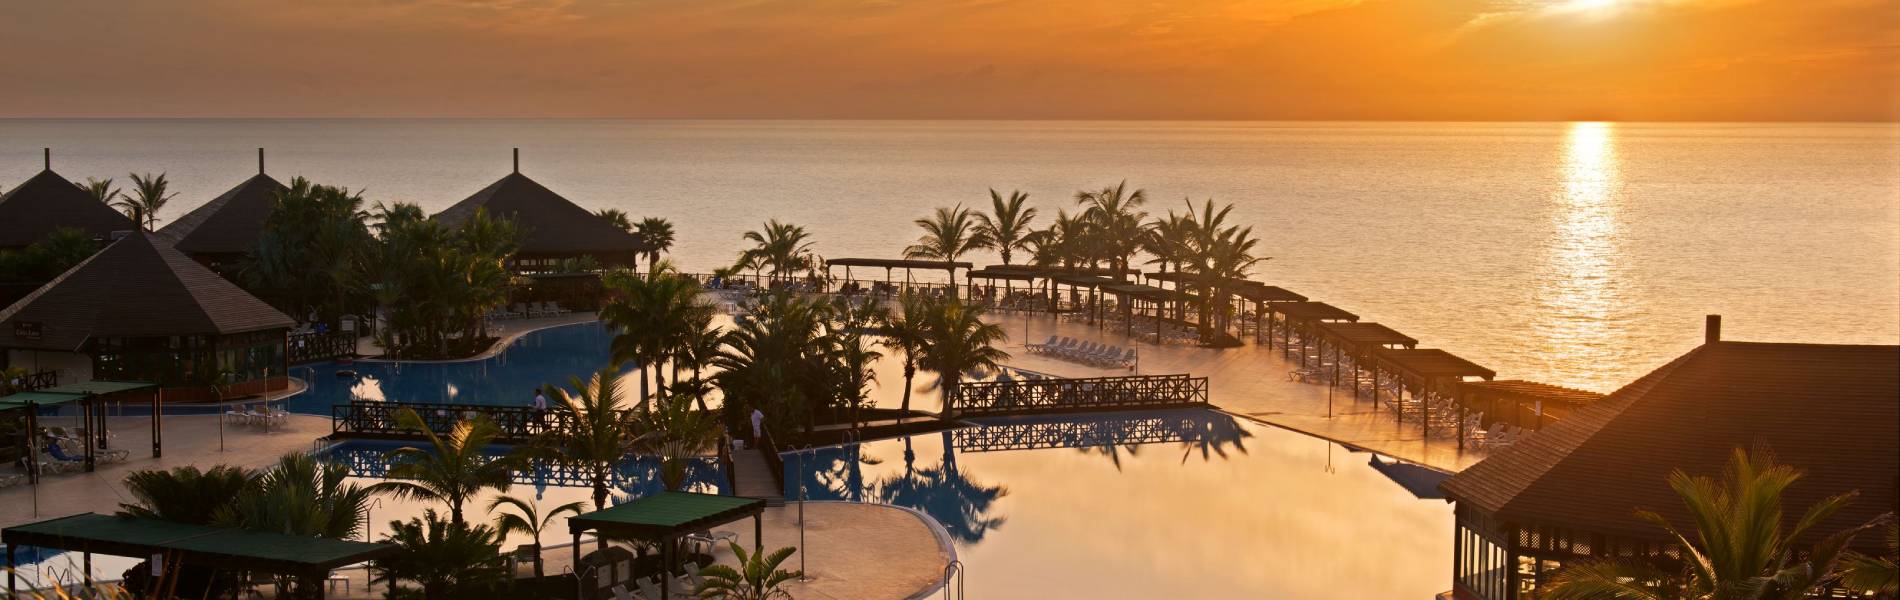 Zona de piscinas del Hotel La Palma Princess